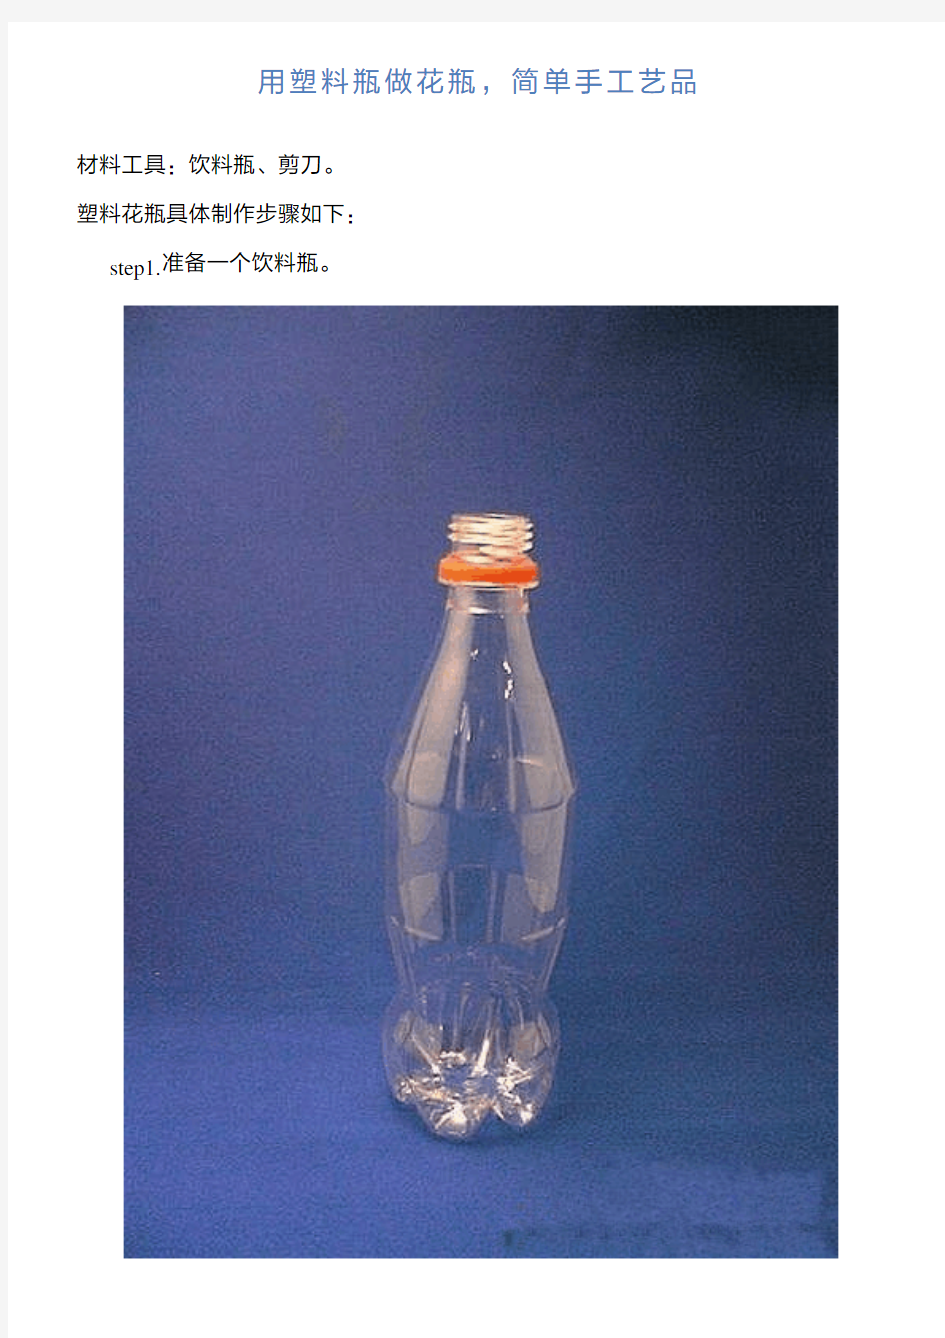 用塑料瓶做花瓶,简单手工艺品